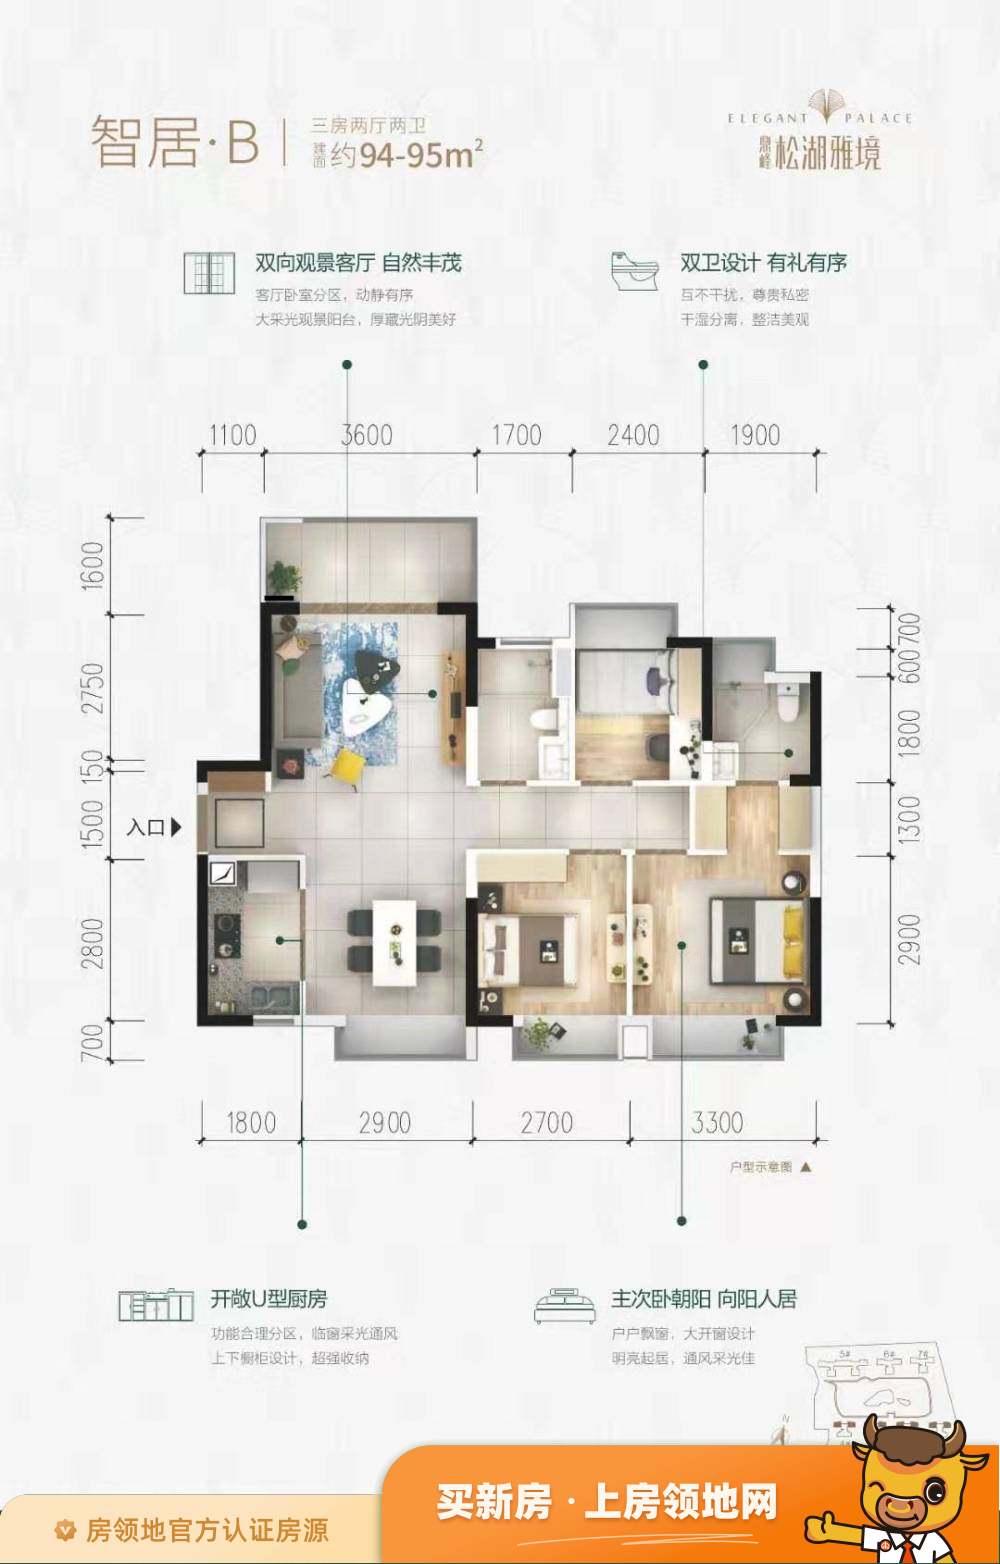 WJ-J-2018-053号地块户型图3室2厅2卫